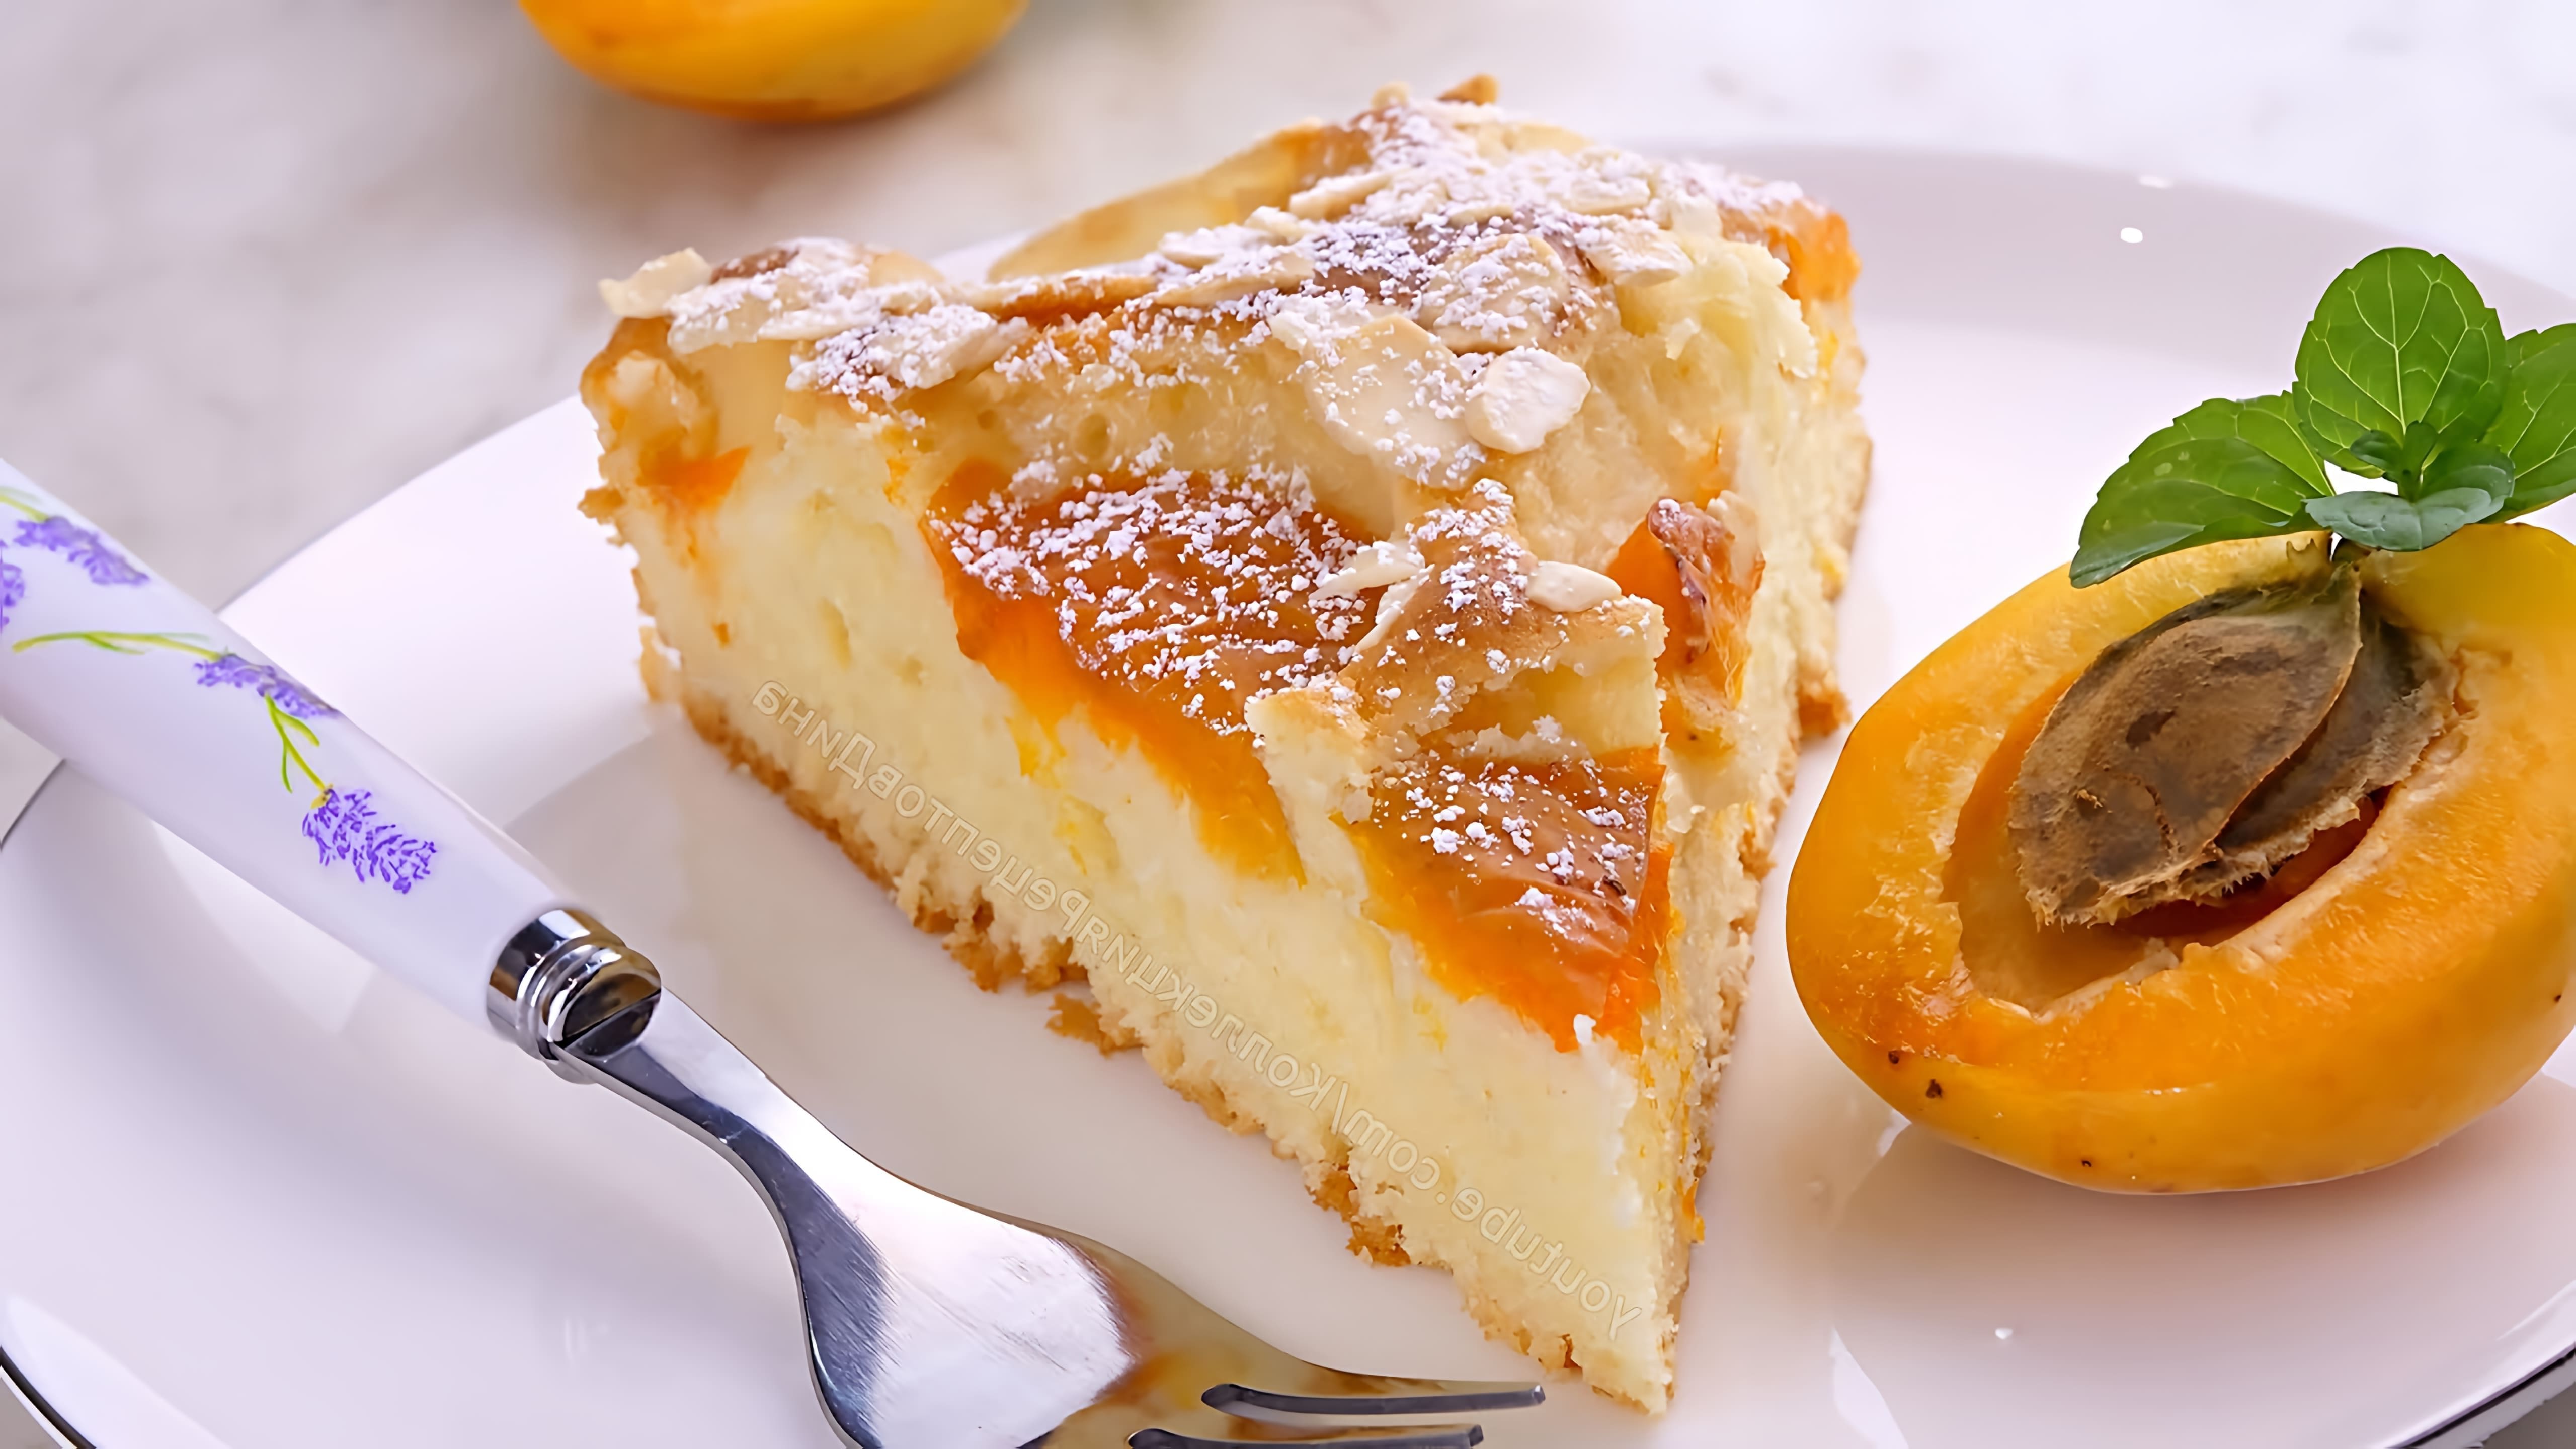 В этом видео демонстрируется рецепт быстрого и вкусного фруктового пирога с абрикосами